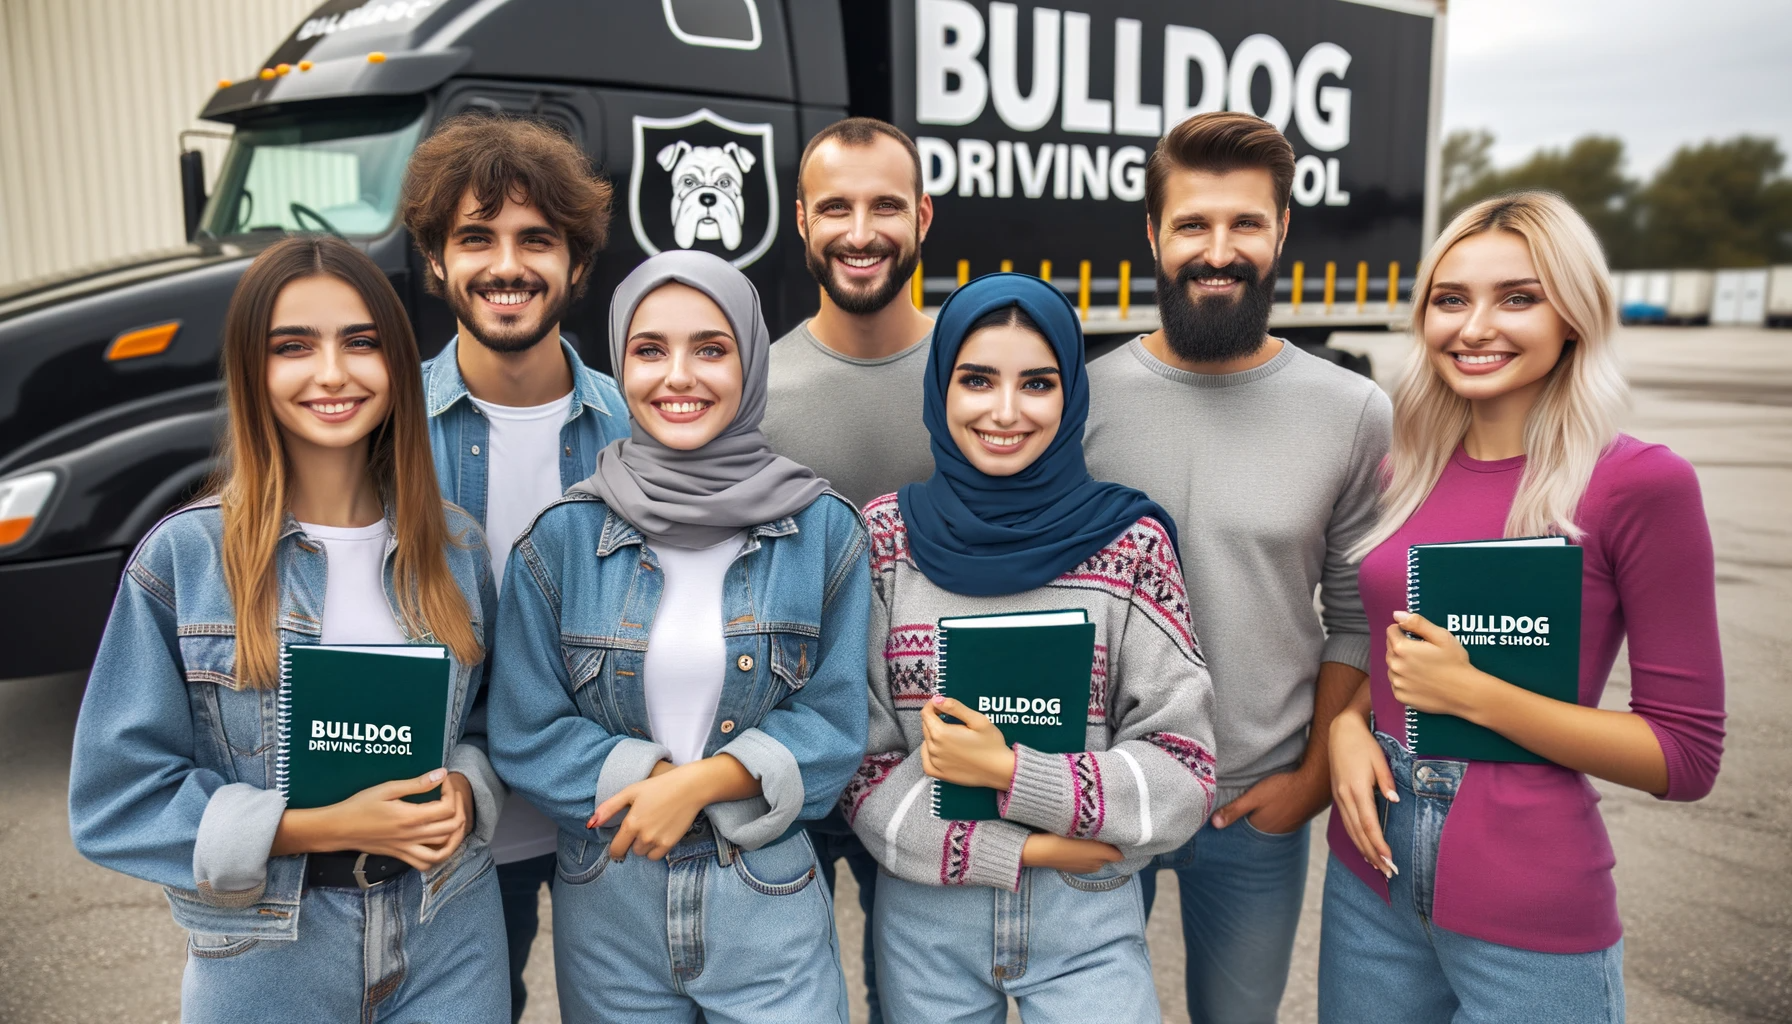 Bulldog Driving School: A Multilingual Hub for Free CDL Training